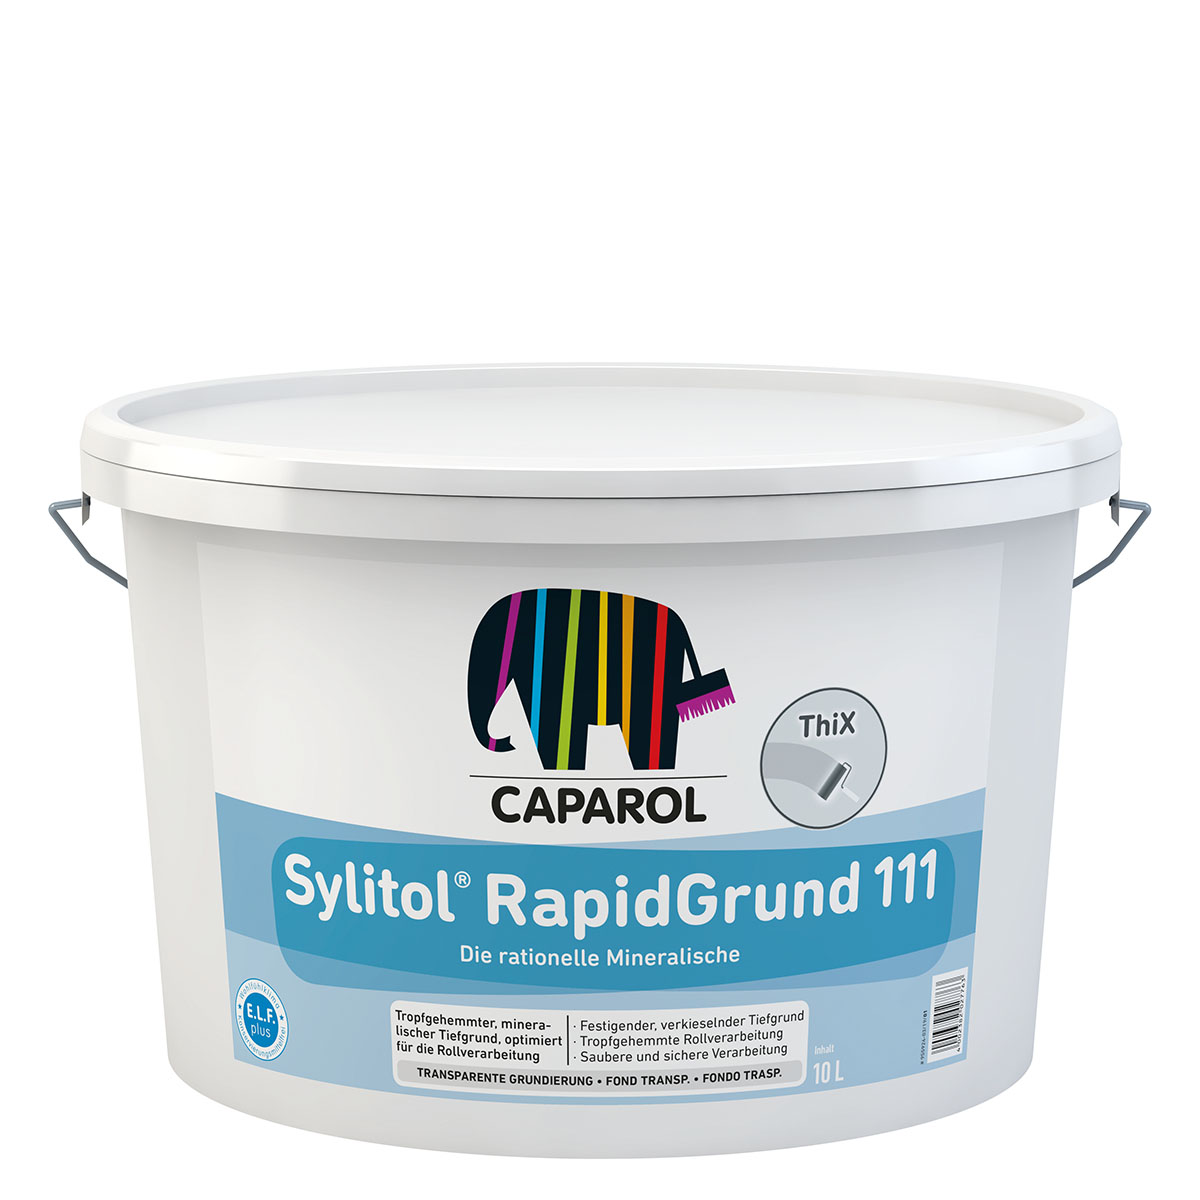 Caparol Sylitol RapidGrund 111 farblos 10L, mineralischer Tiefgrund